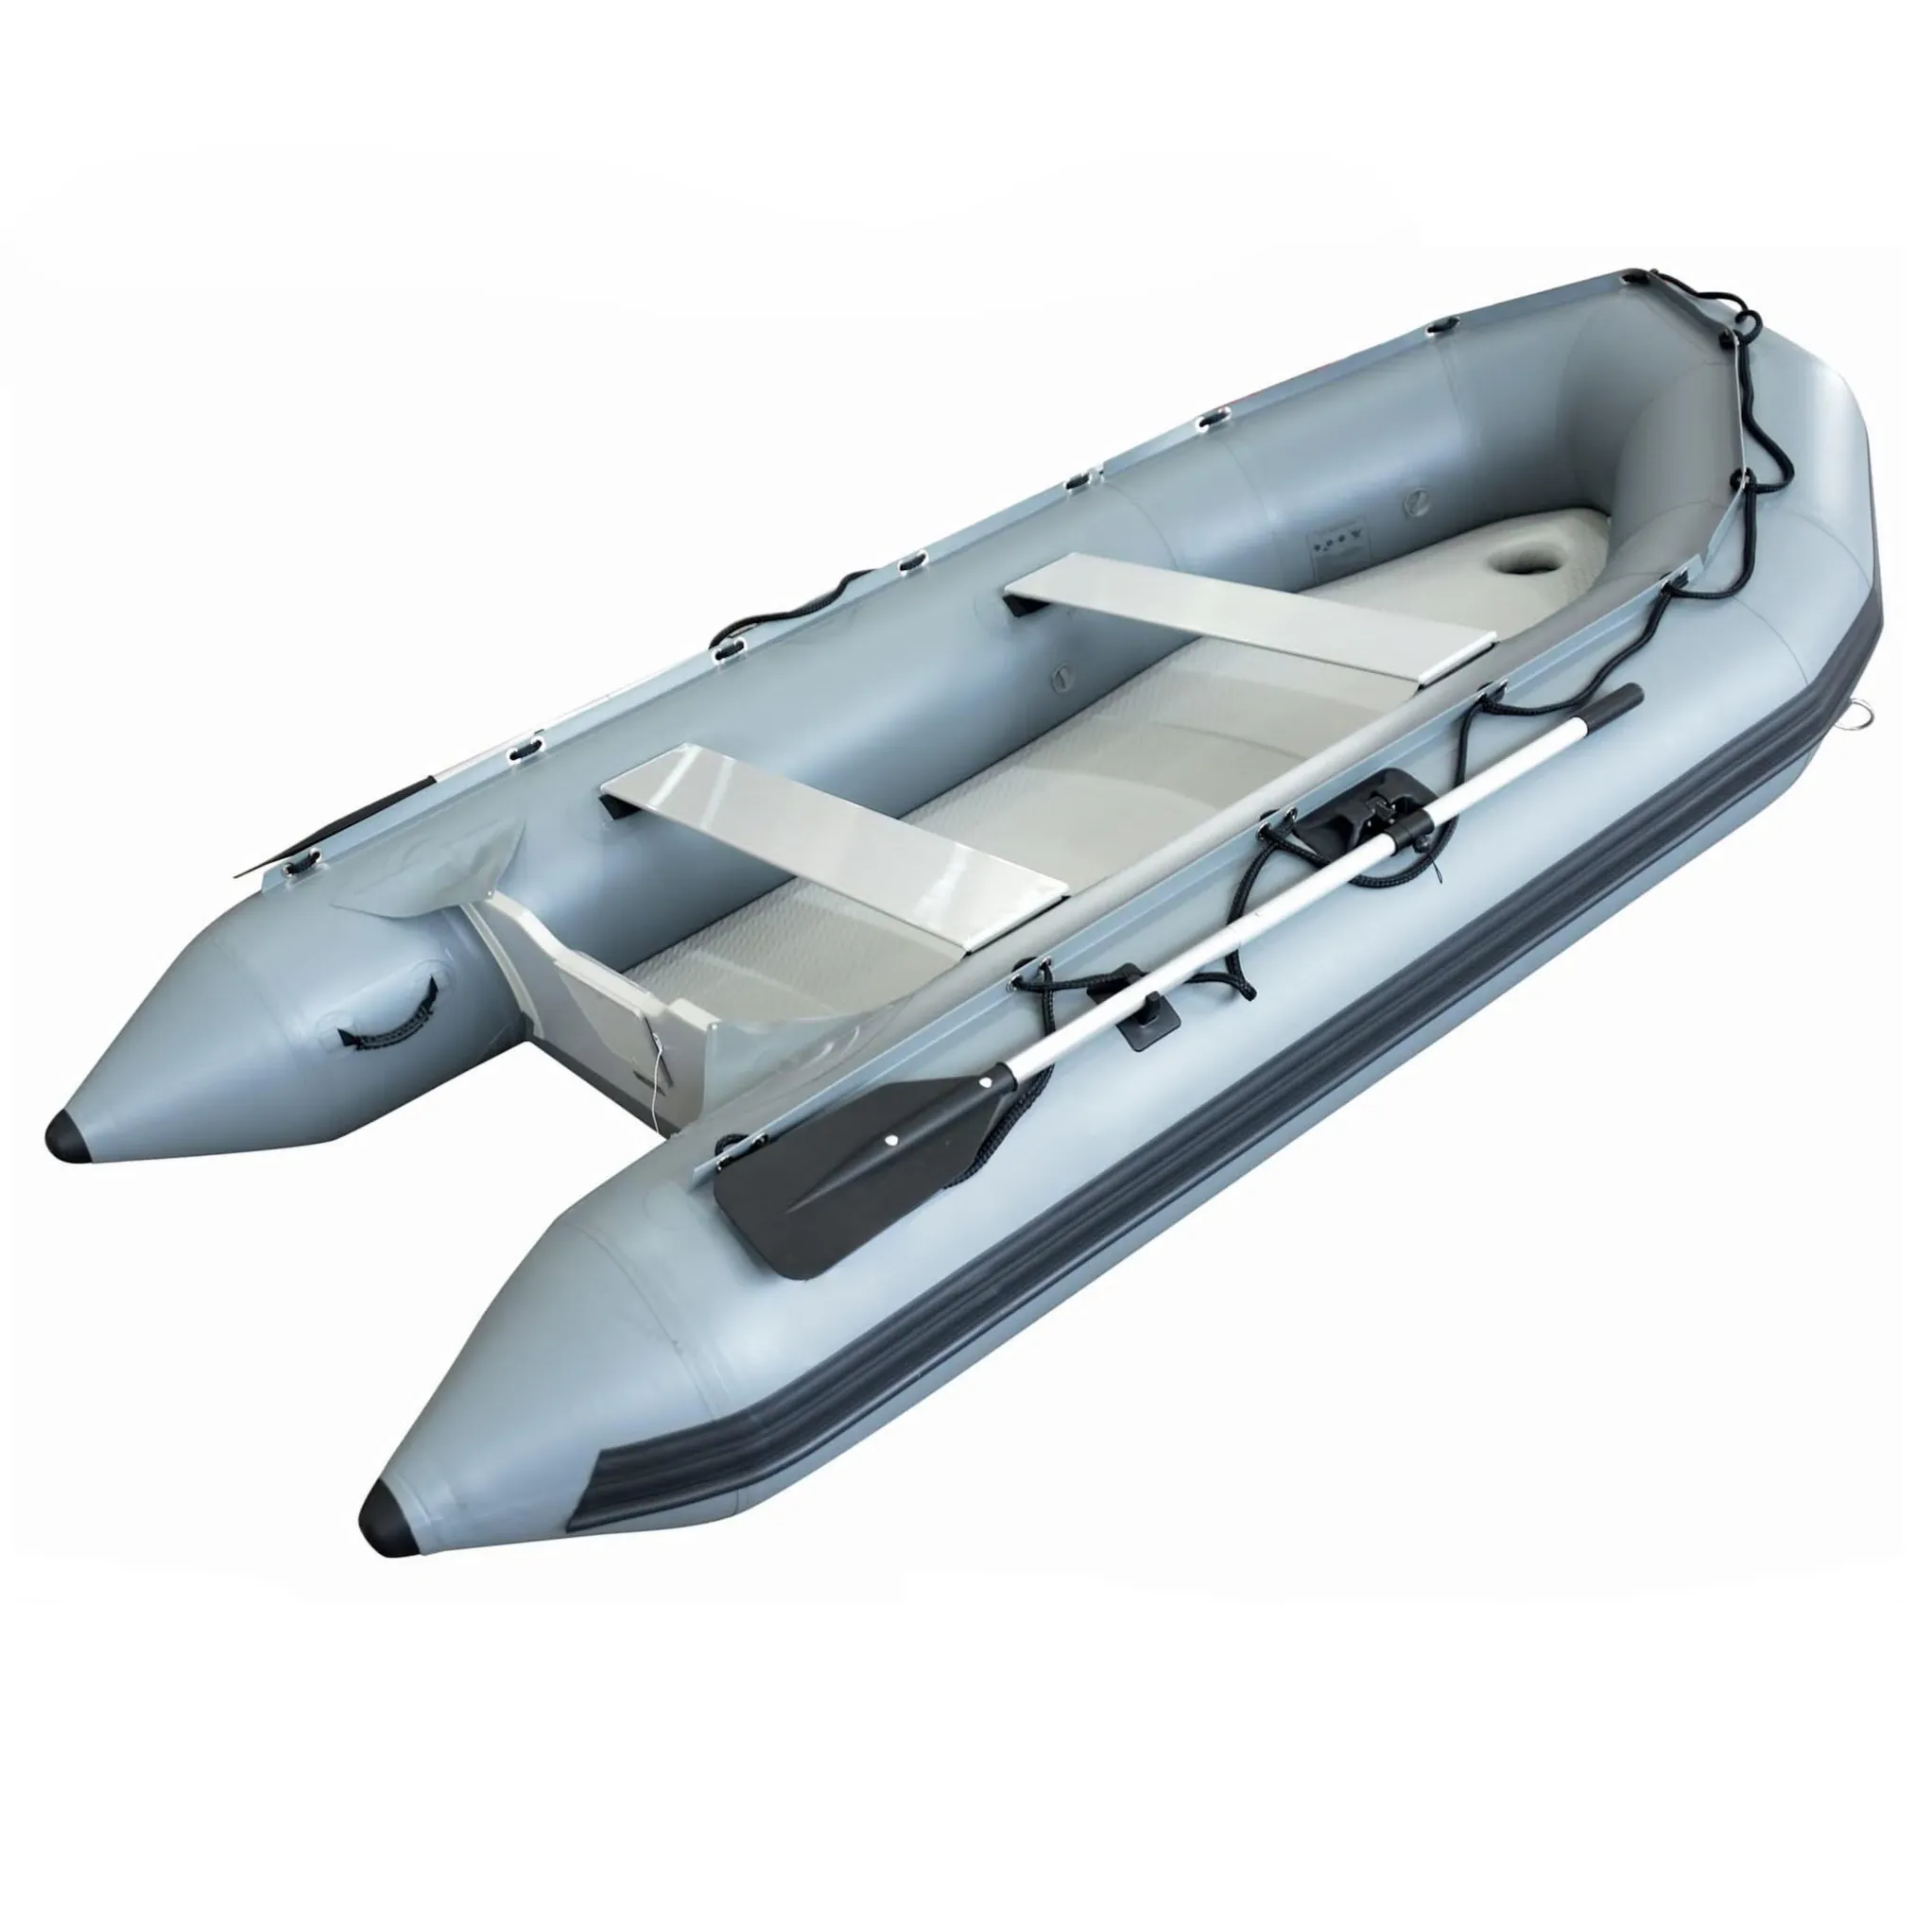 Bateau côtelé de luxe, coque en Aluminium, plancher en caoutchouc rigide, bateau à rames gonflable, bateau de sport